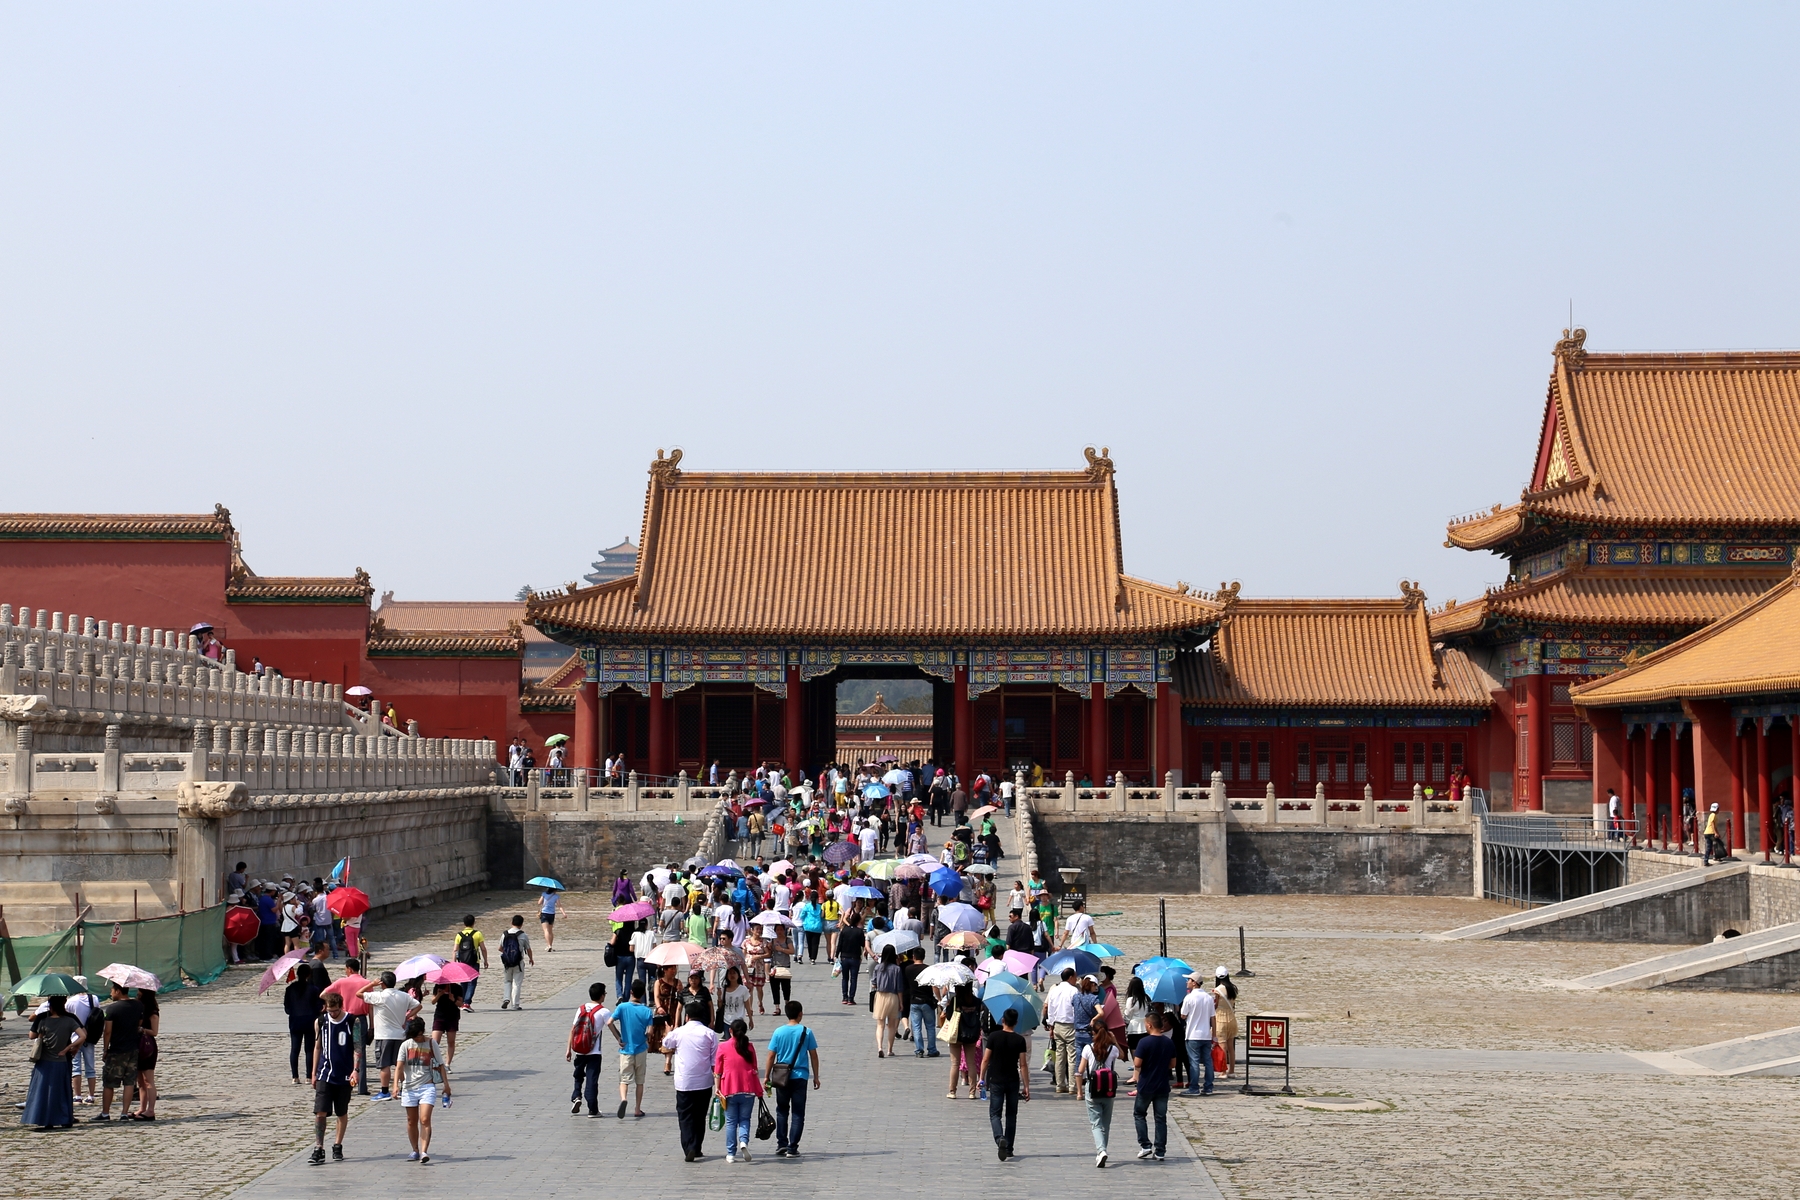 Туристы в Китае столкнулись с проблемой оплаты услуг банковскими картами и наличными